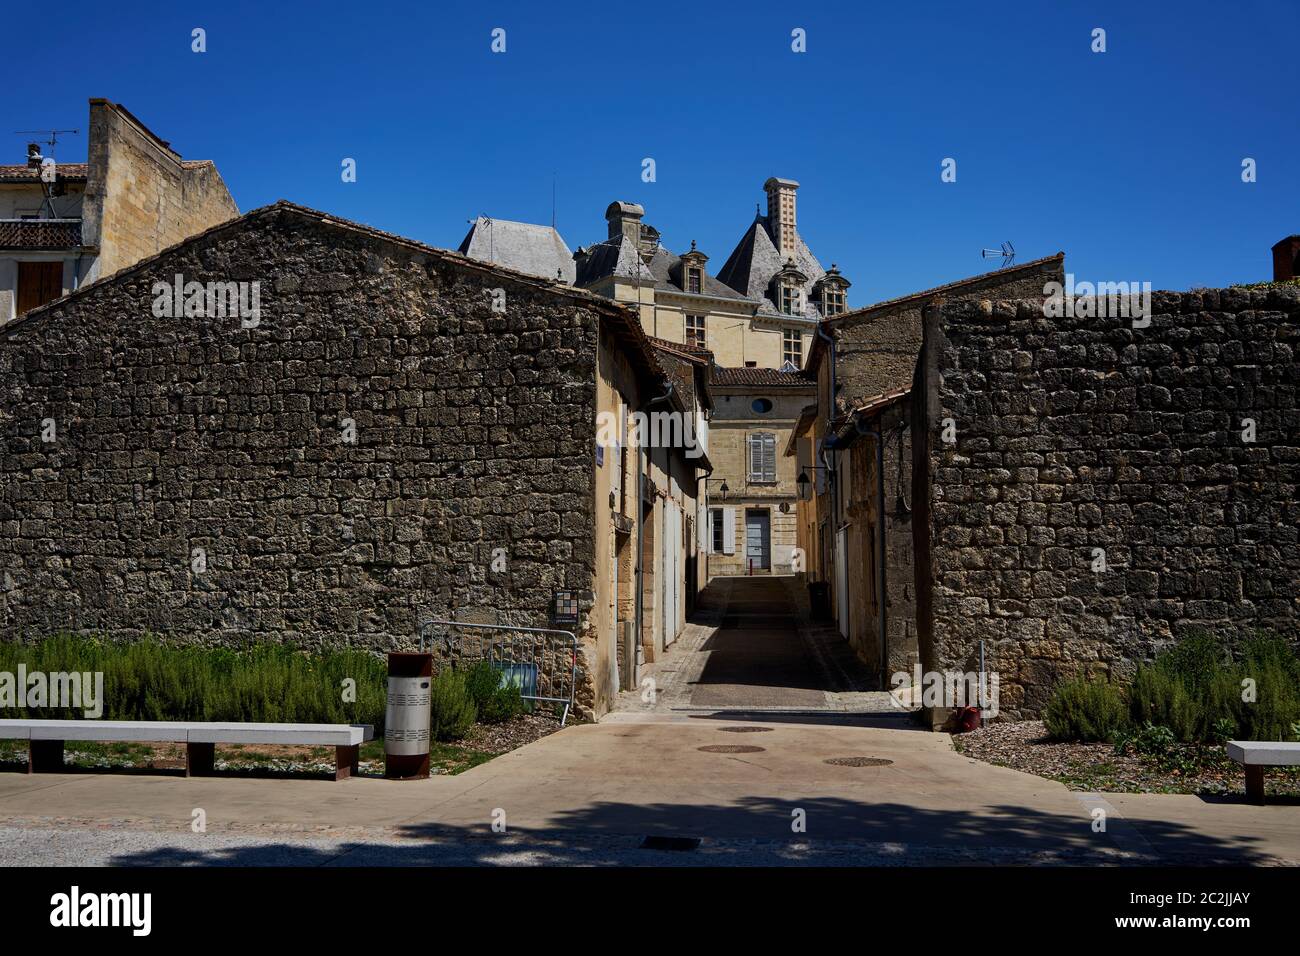 Château des Ducs d'Epernon Cadillac (Château ducal de Cadillac), vu dans les rues de la ville de Cadillac, entre-deux-Mers, Bordeaux août 2019 Banque D'Images